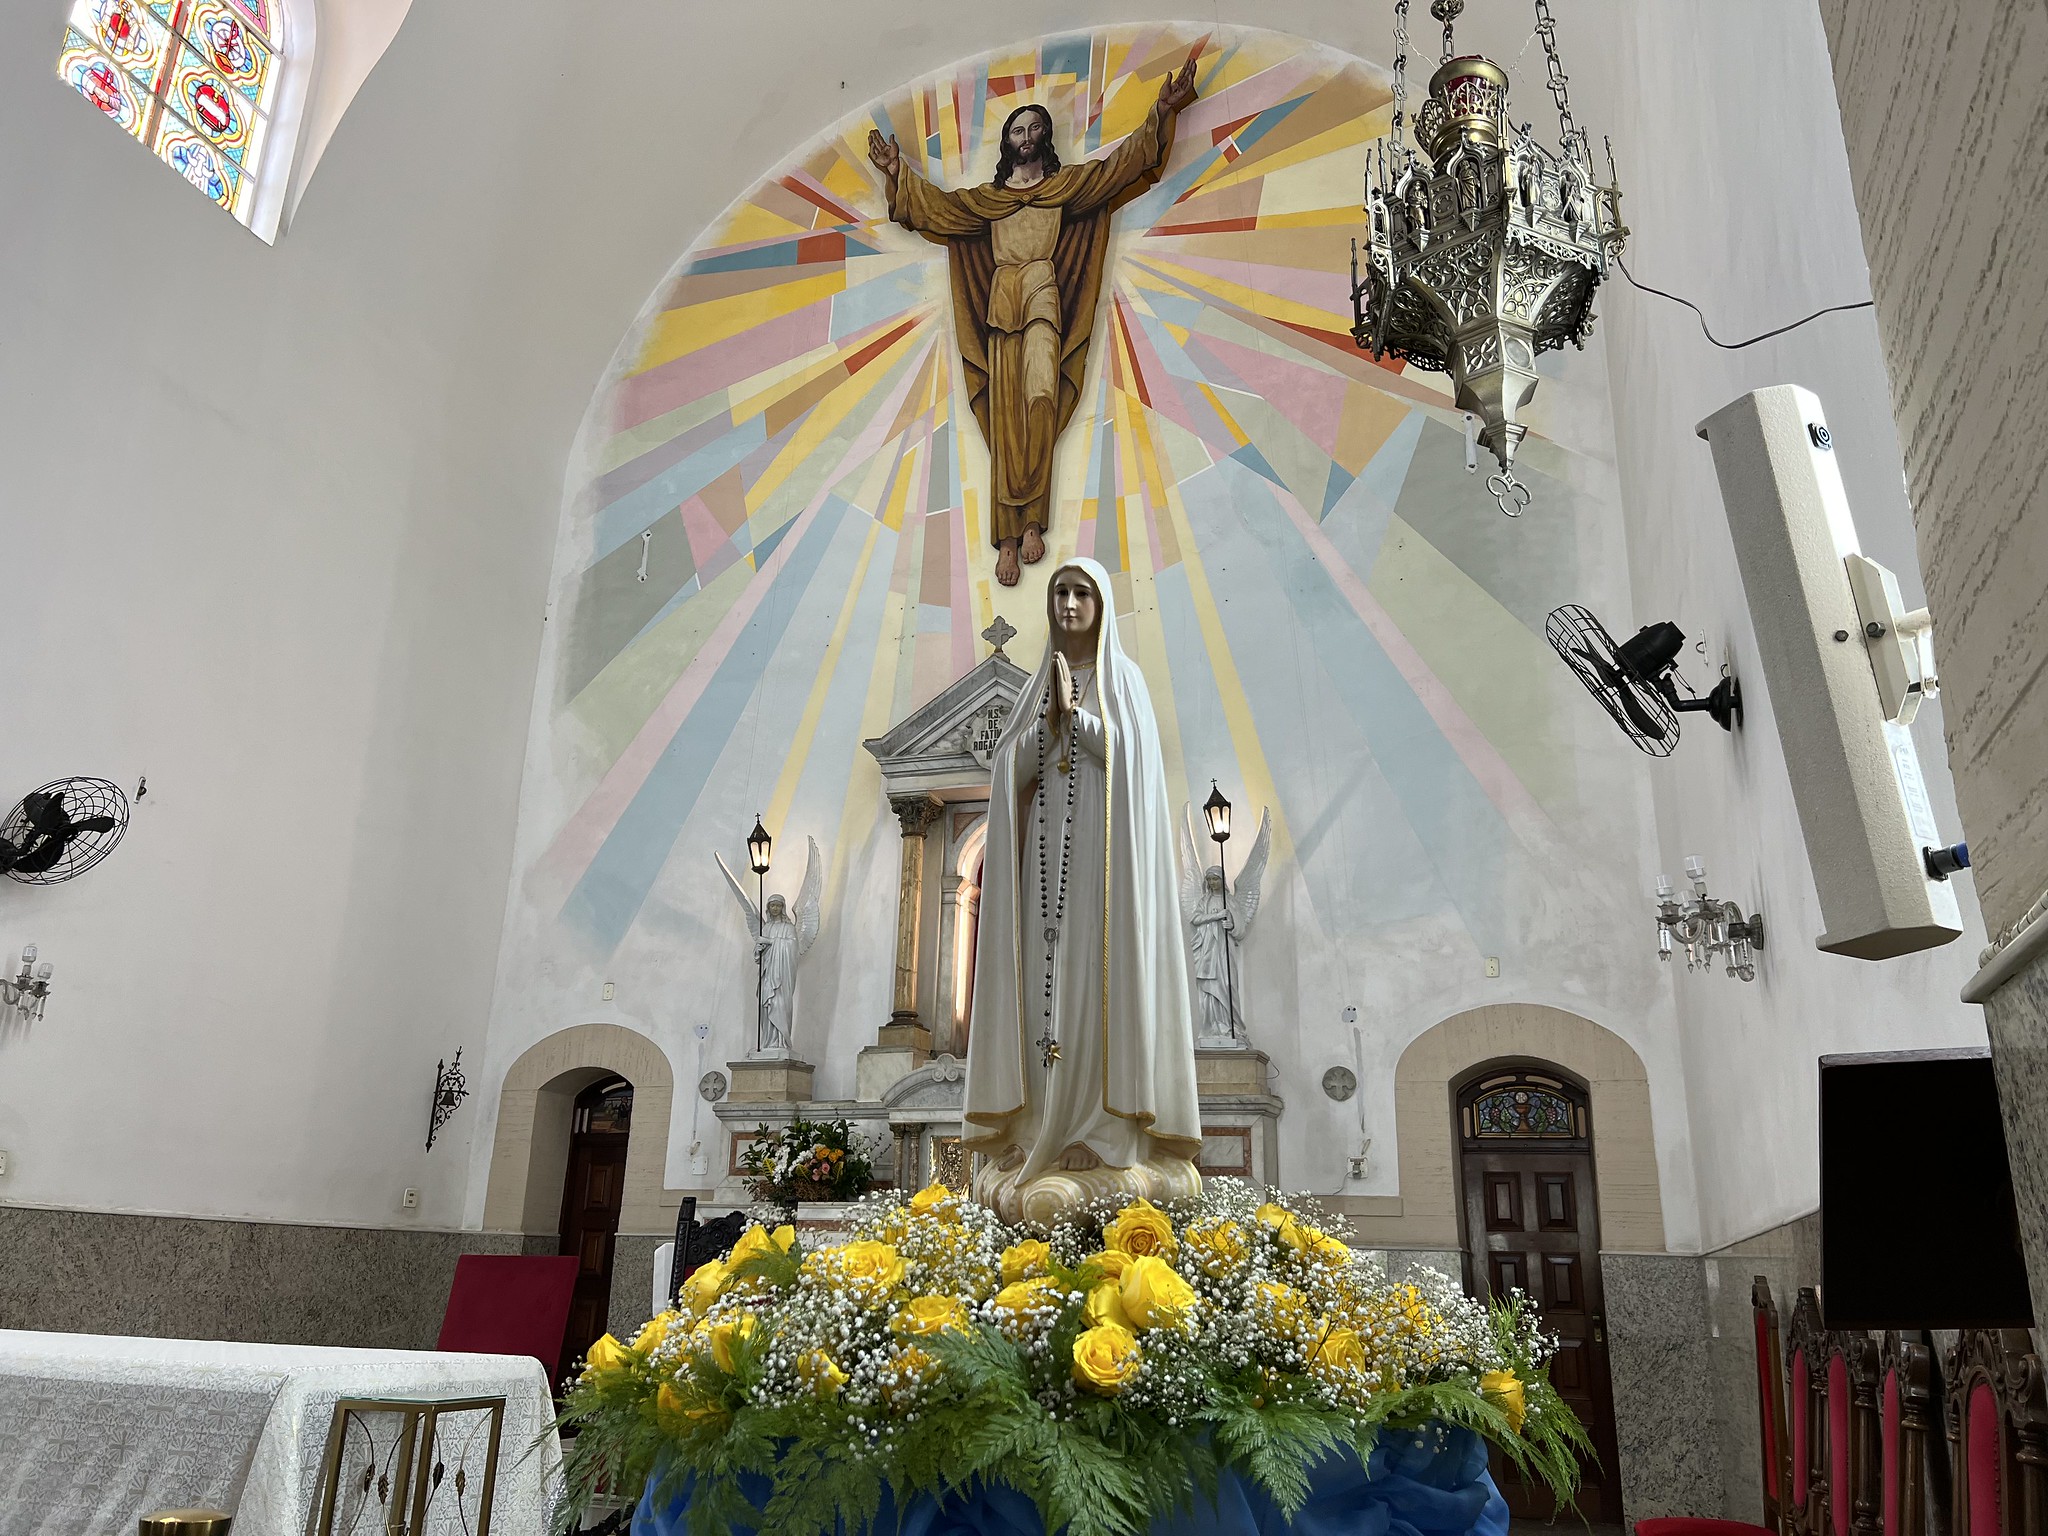 Festividades alusivas à Nossa Senhora de Fátima começam nesta sexta-feira